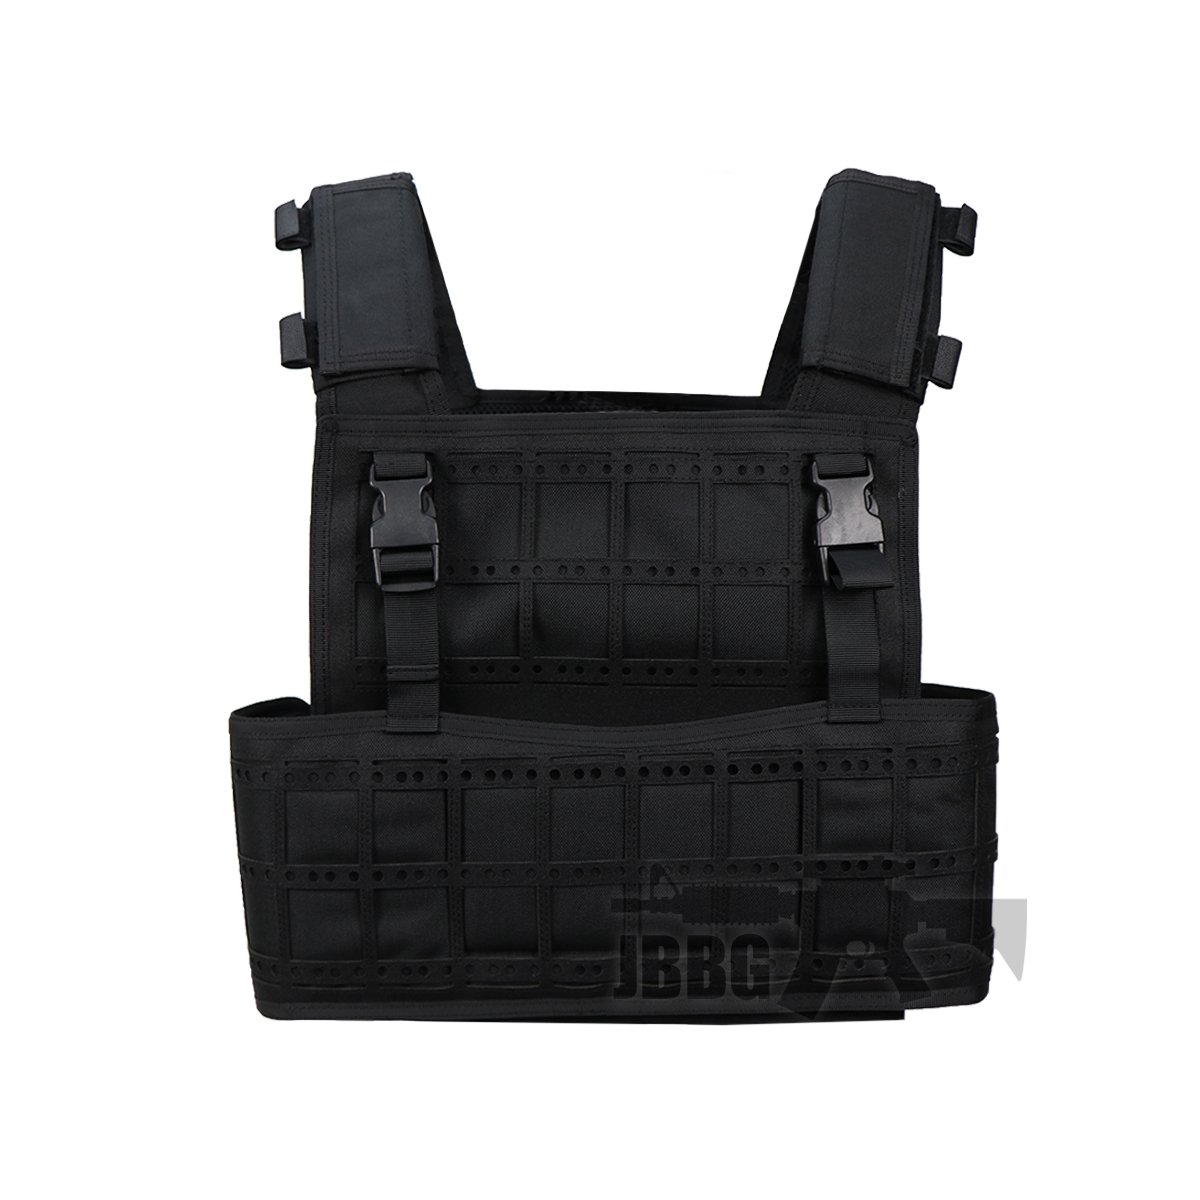 Trimex VE43 Portable Conception Plate Carrier Tactical Vest